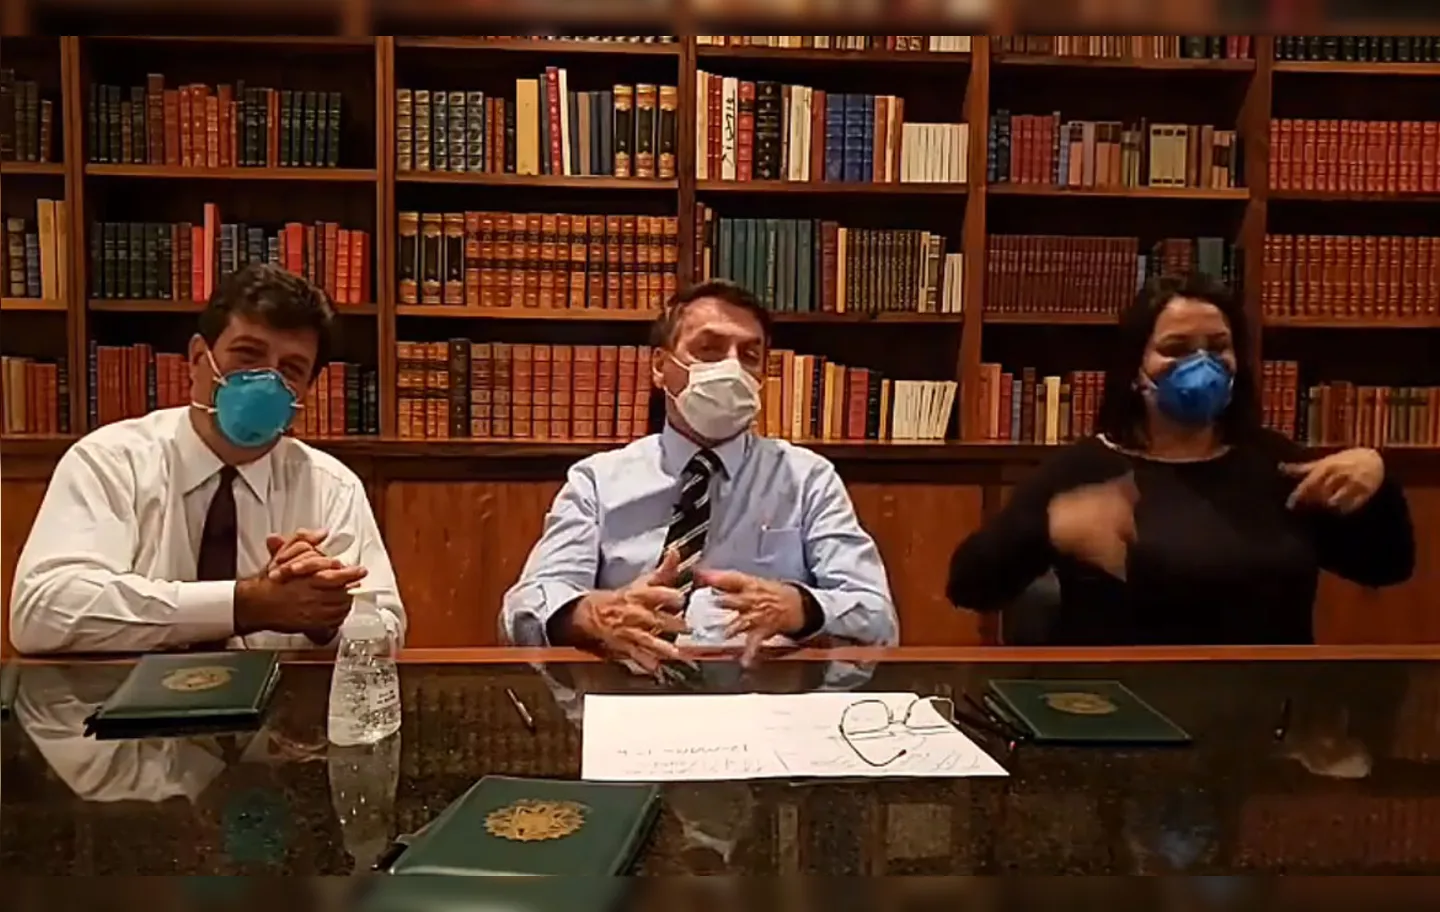 Presidente fez transmissão ao lado do ministro da Saúde, Luiz Henrique Mandetta, ambos usando máscaras cirúrgicas | Foto: Reprodução | Facebook